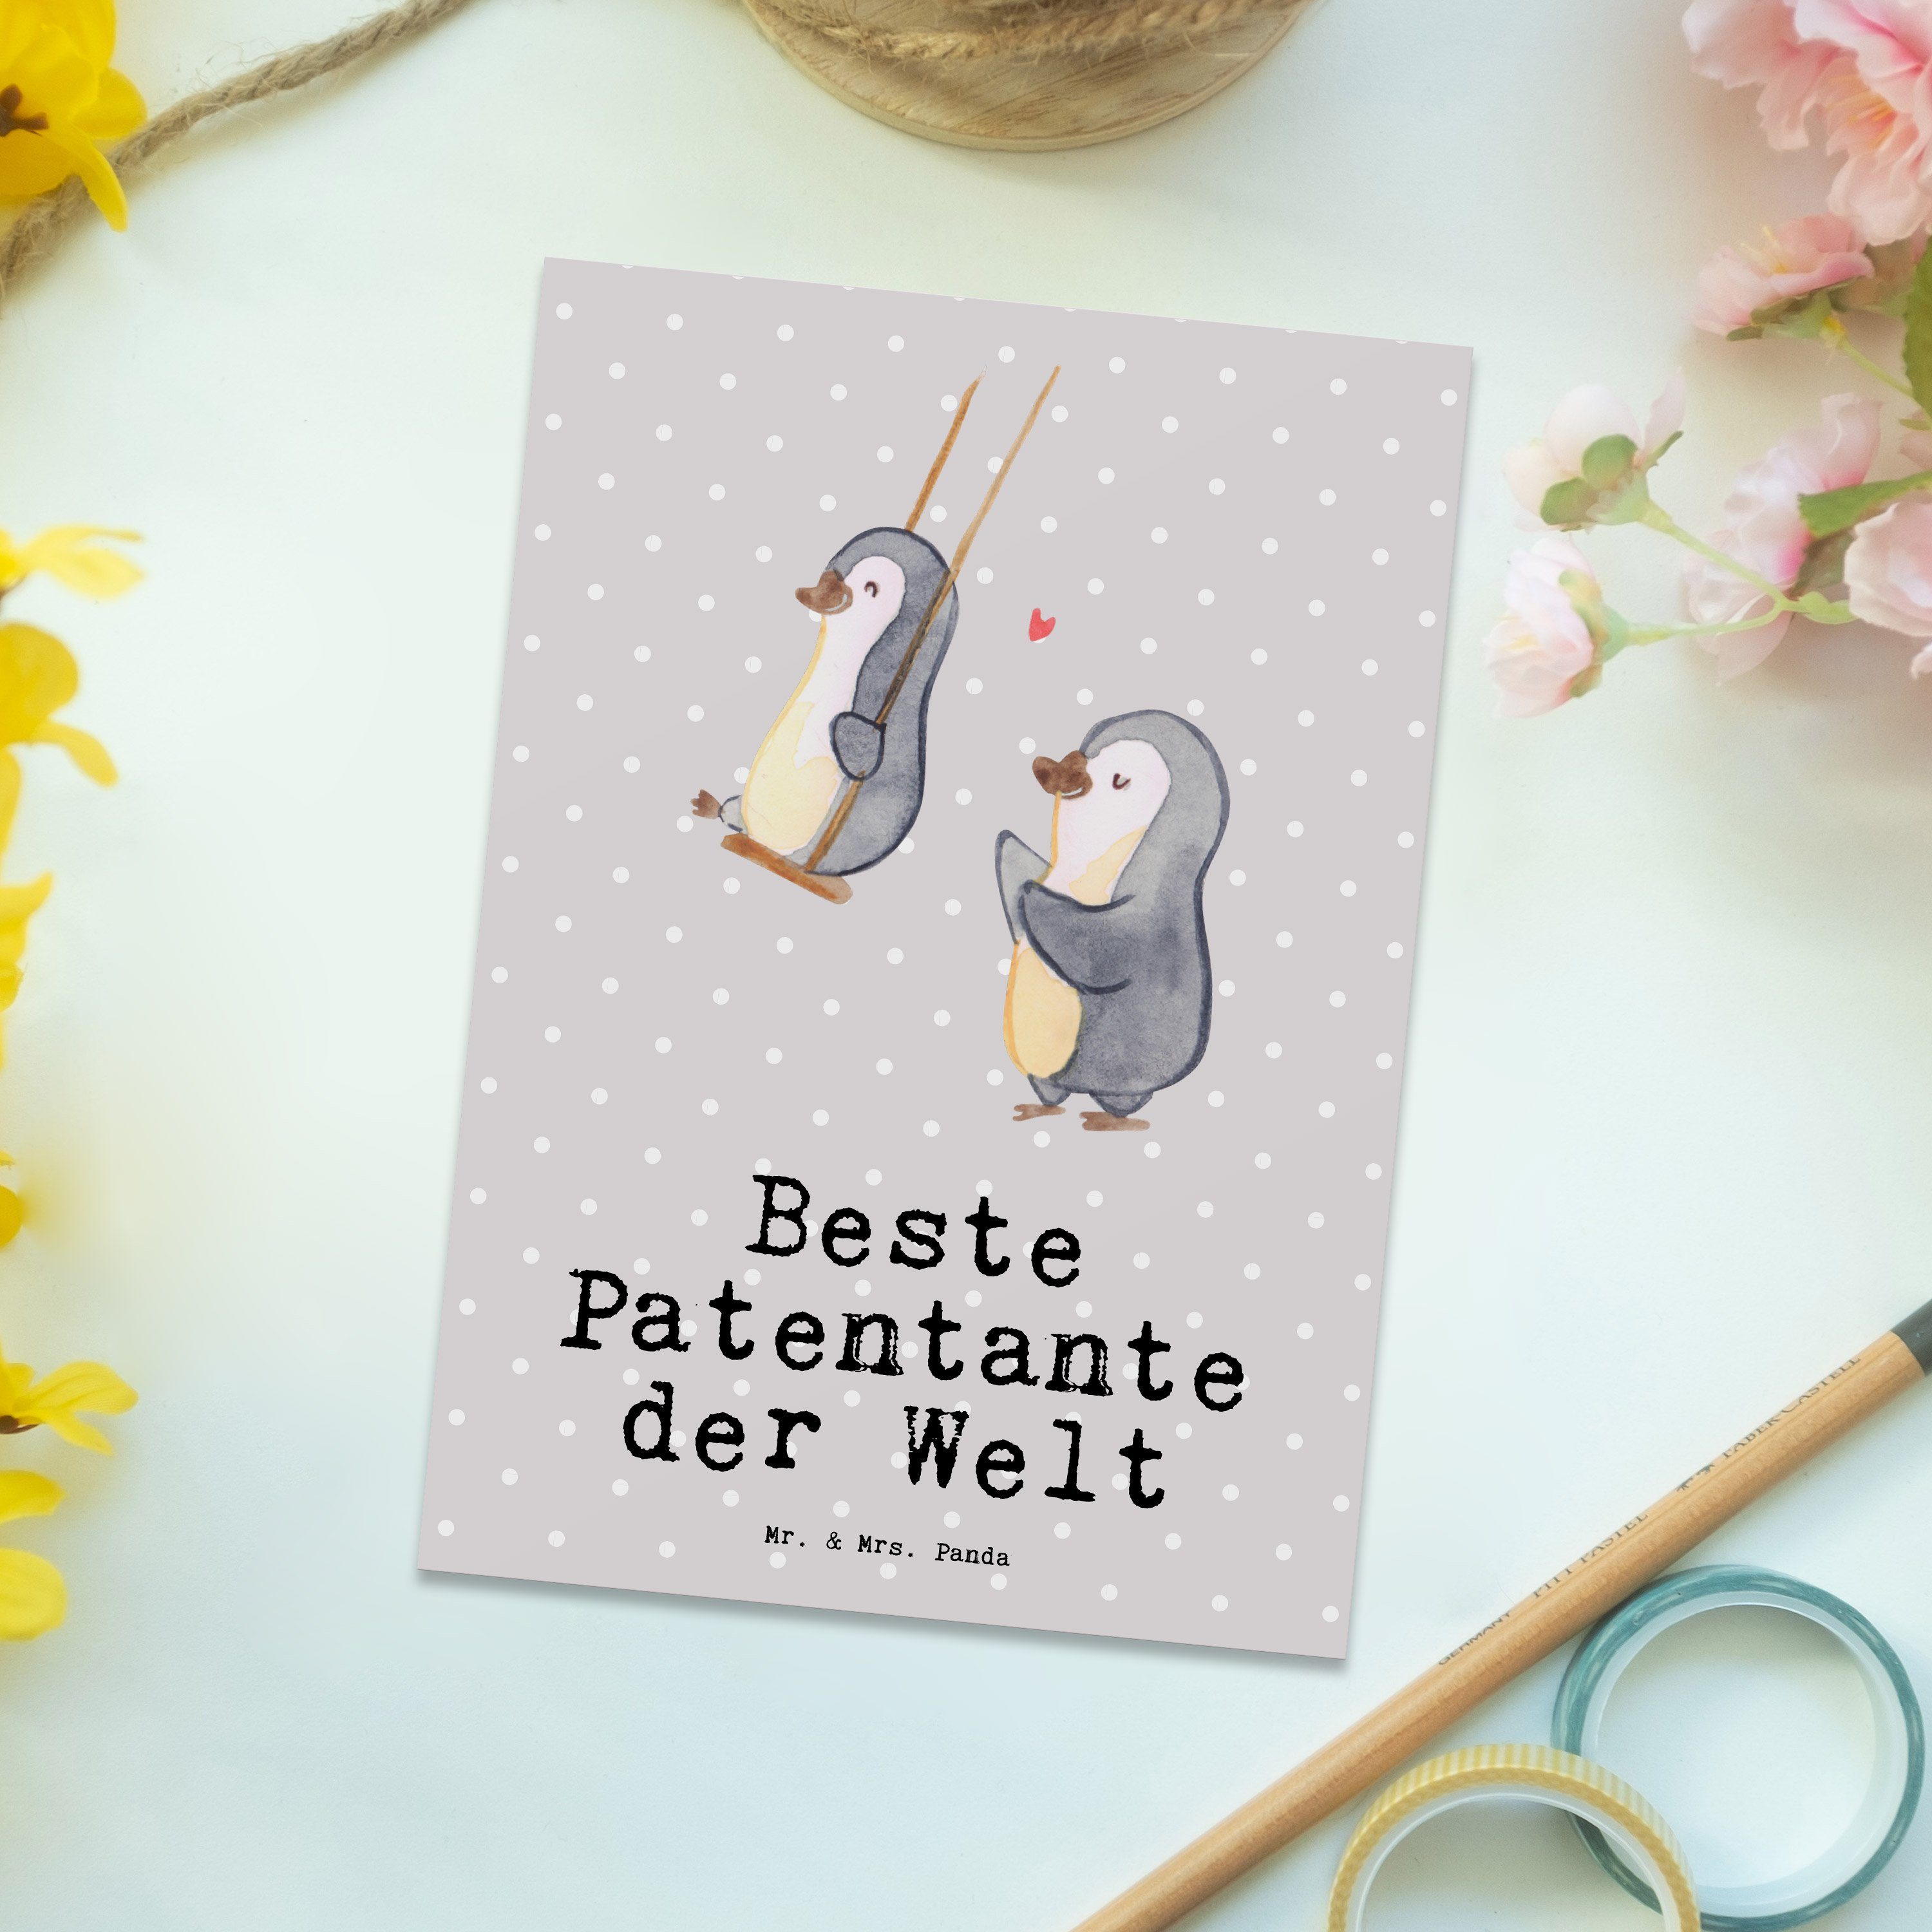 Mr. & Mrs. der Panda - - Pastell Beste Geschenk, Patentante Geschenk Postkarte Pinguin Grau Welt